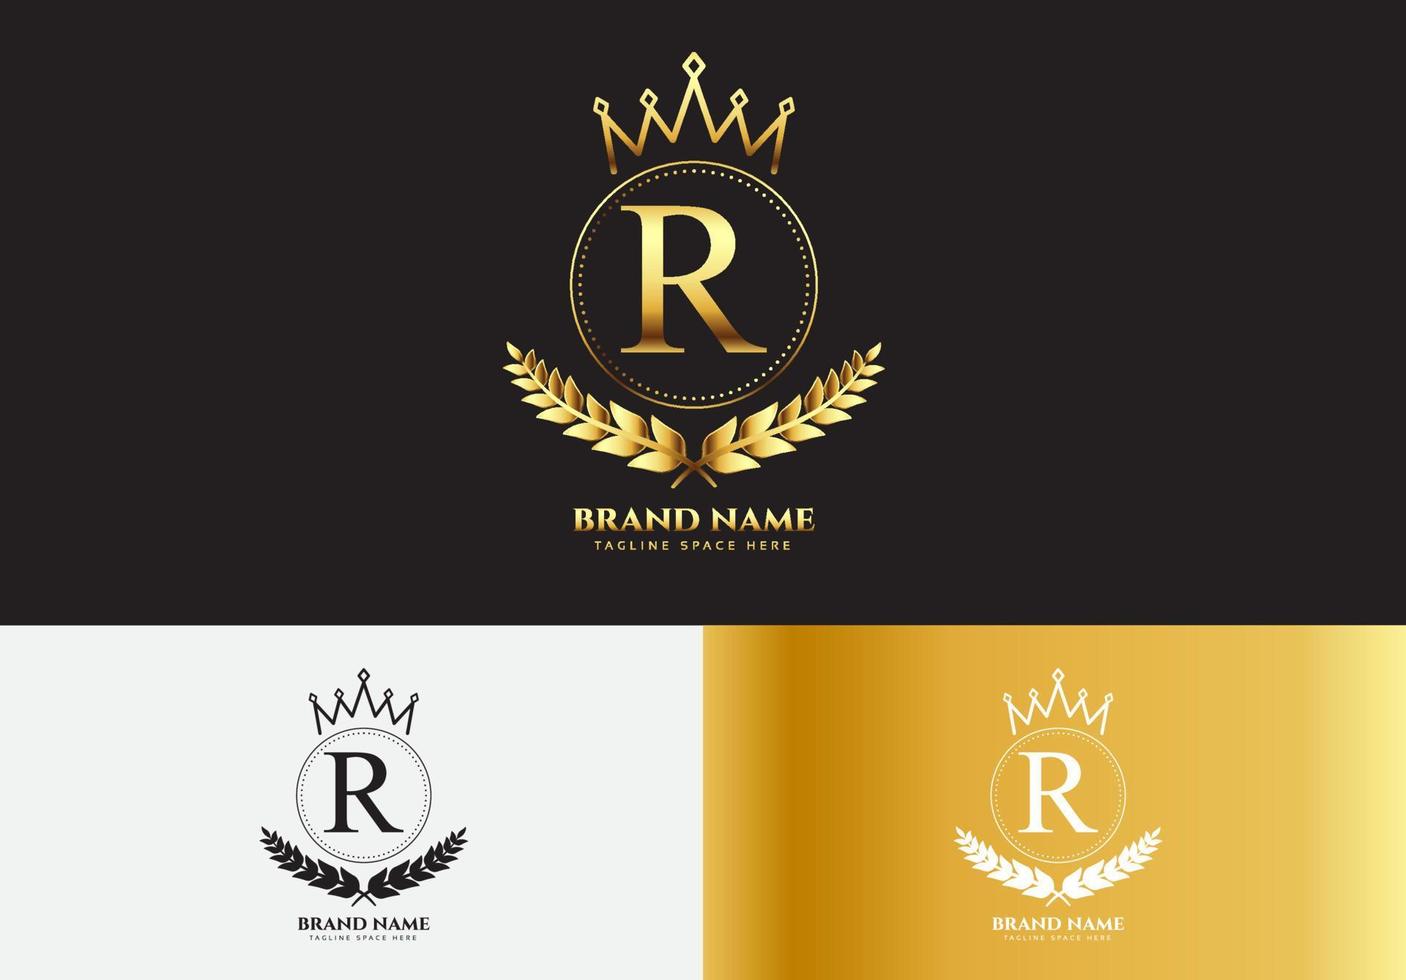 letra r conceito de logotipo de coroa de luxo ouro vetor